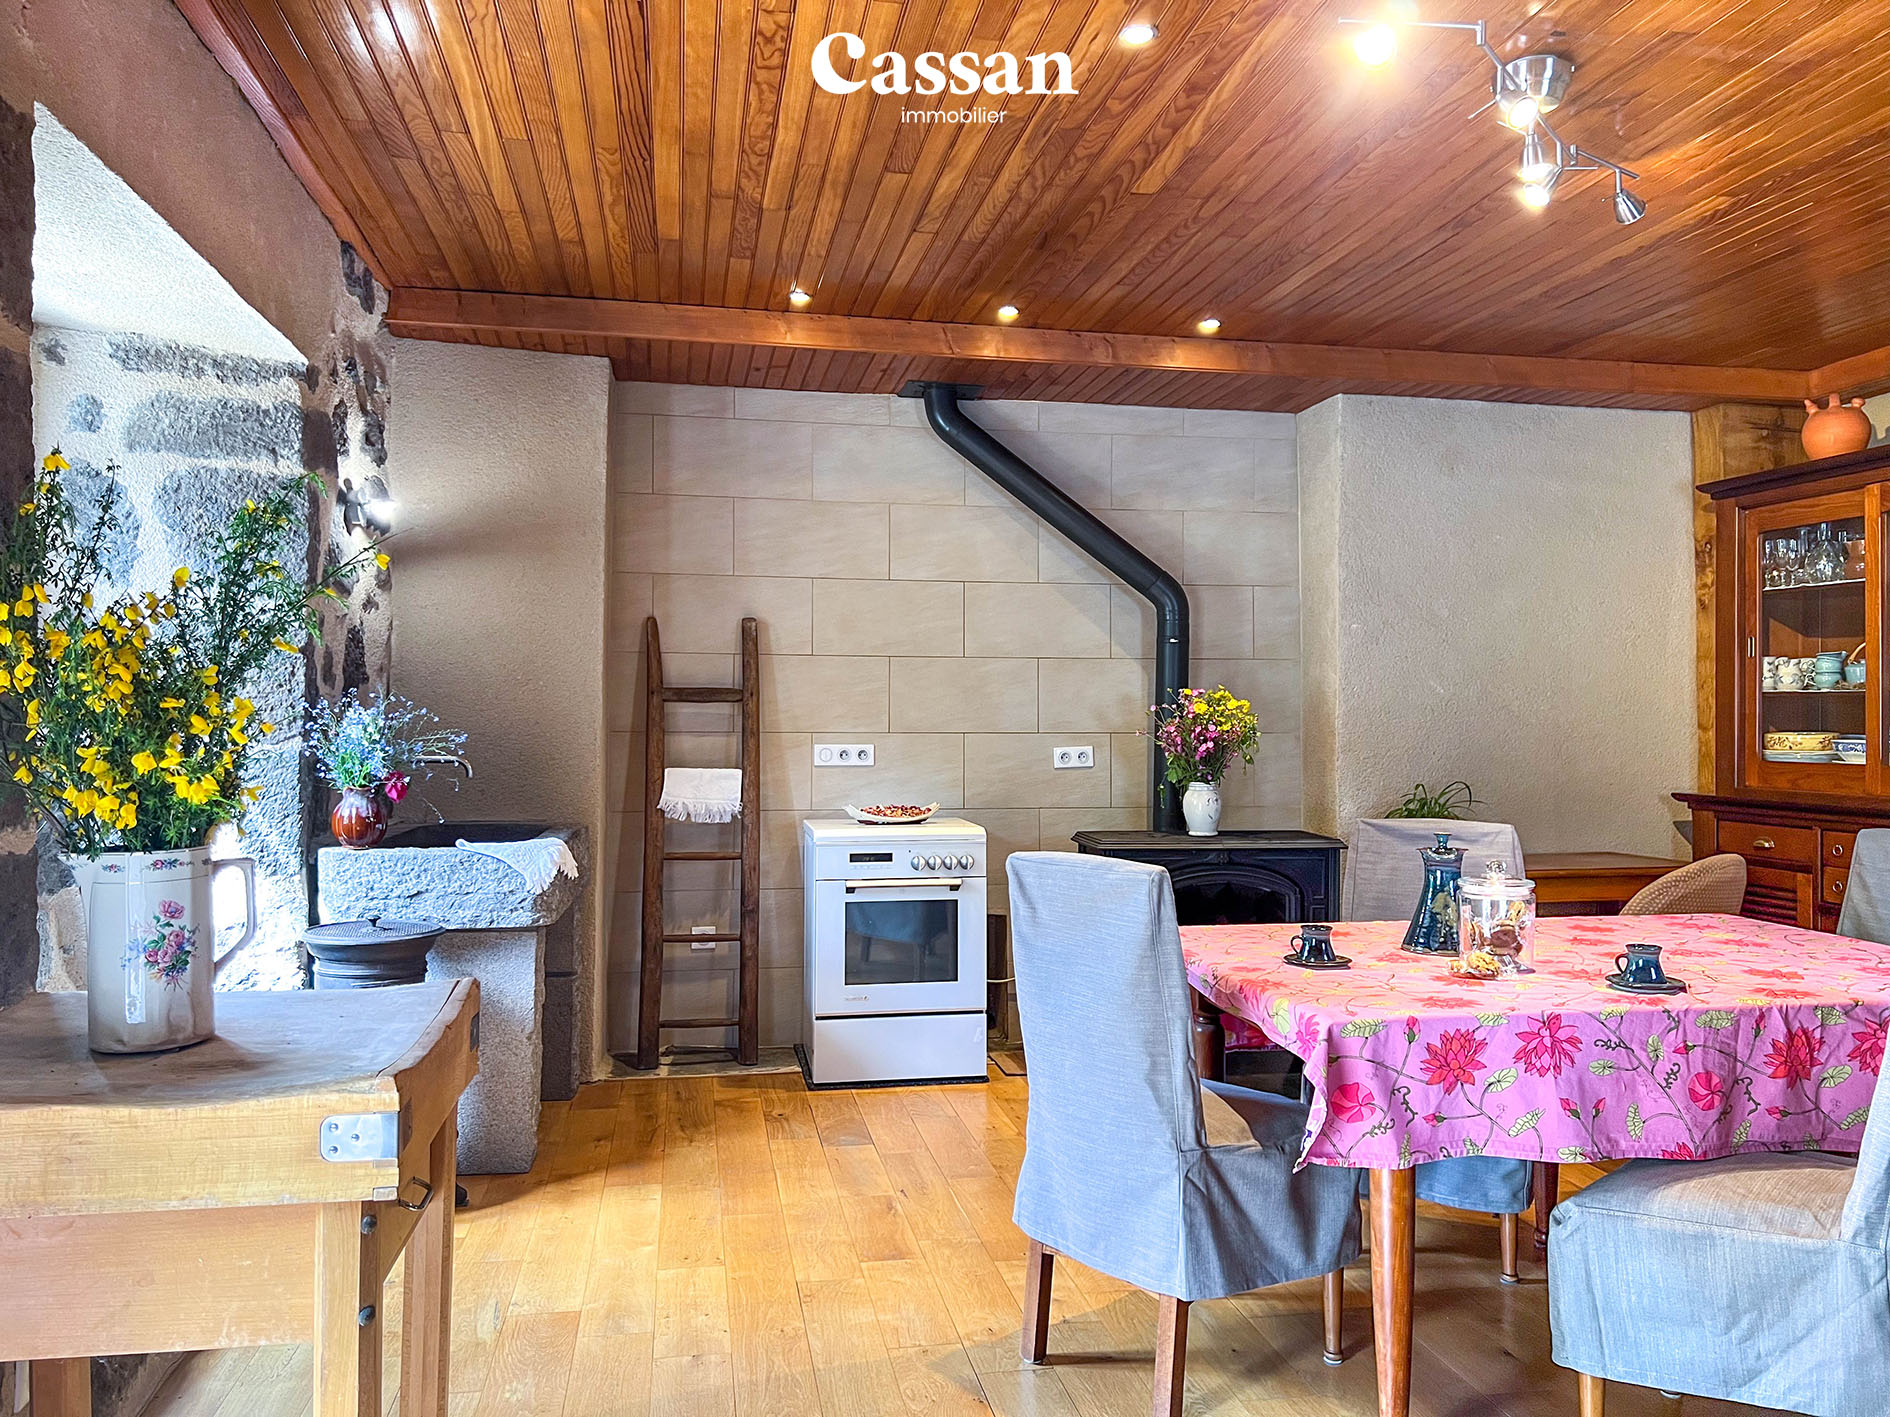 Cuisine maison à vendre Velzic Cassan immobilier